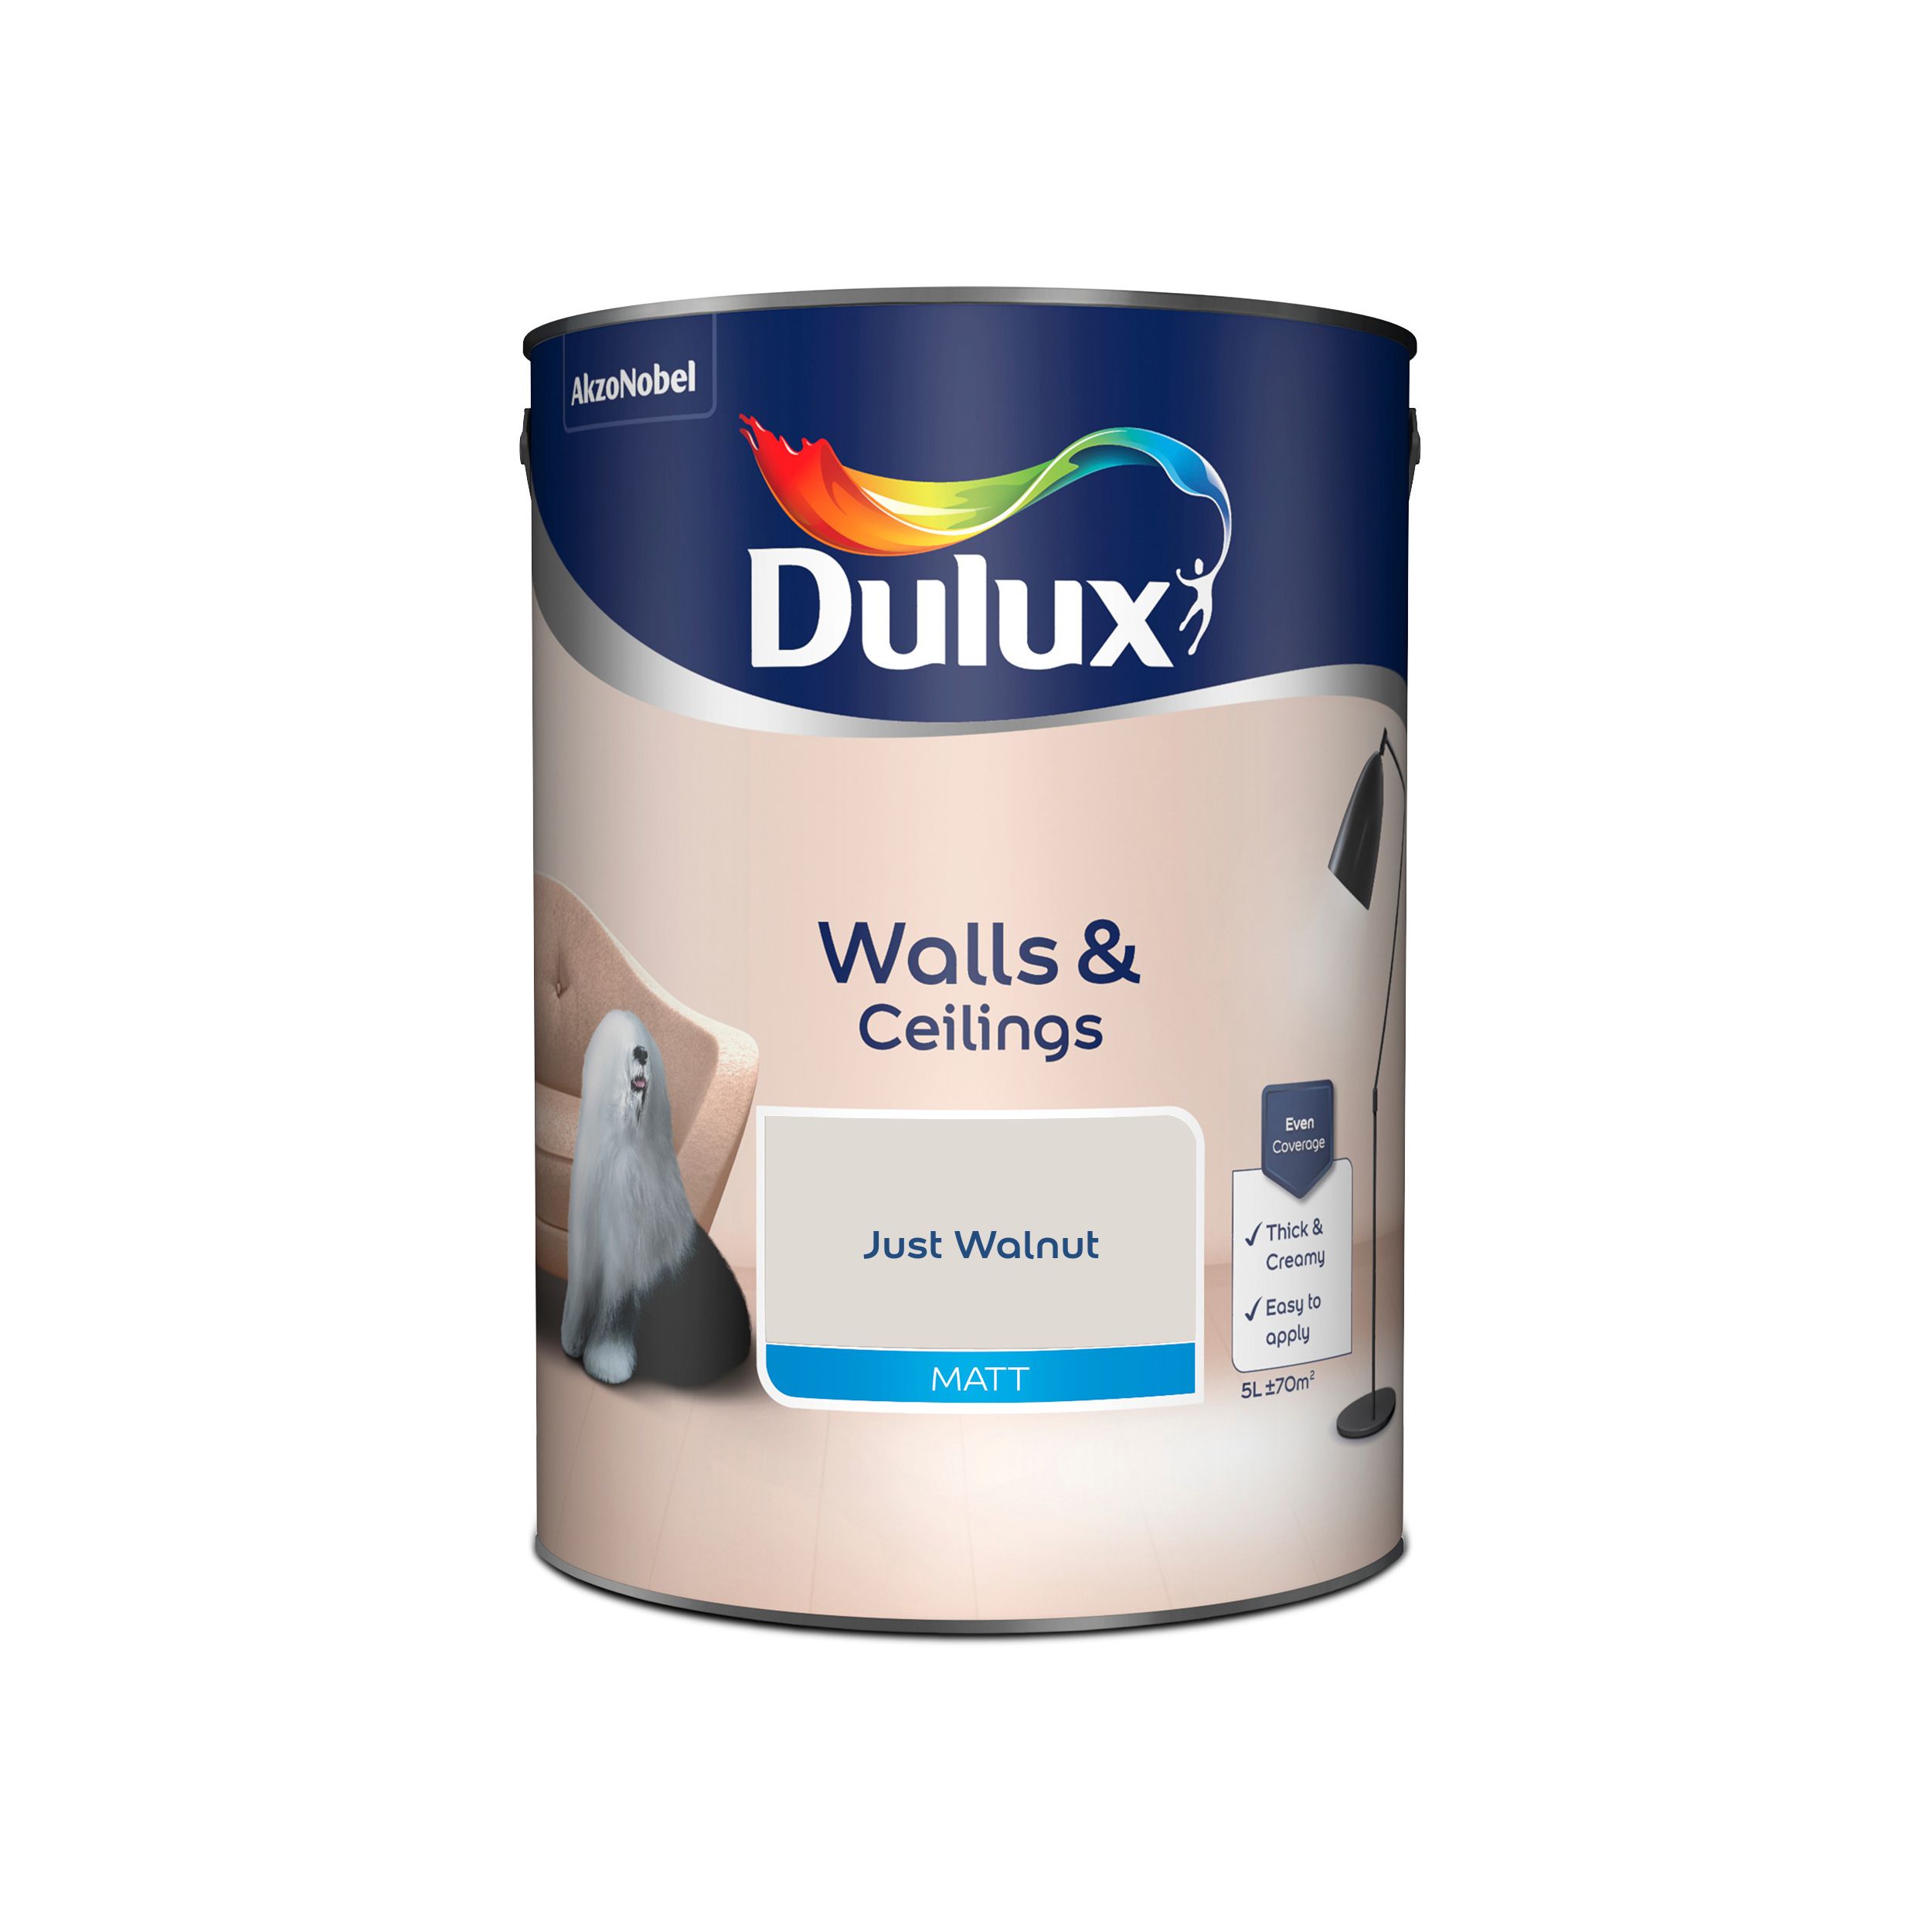 Dulux Walls & ceilings Just walnut Matt Emulsion paint, 5L